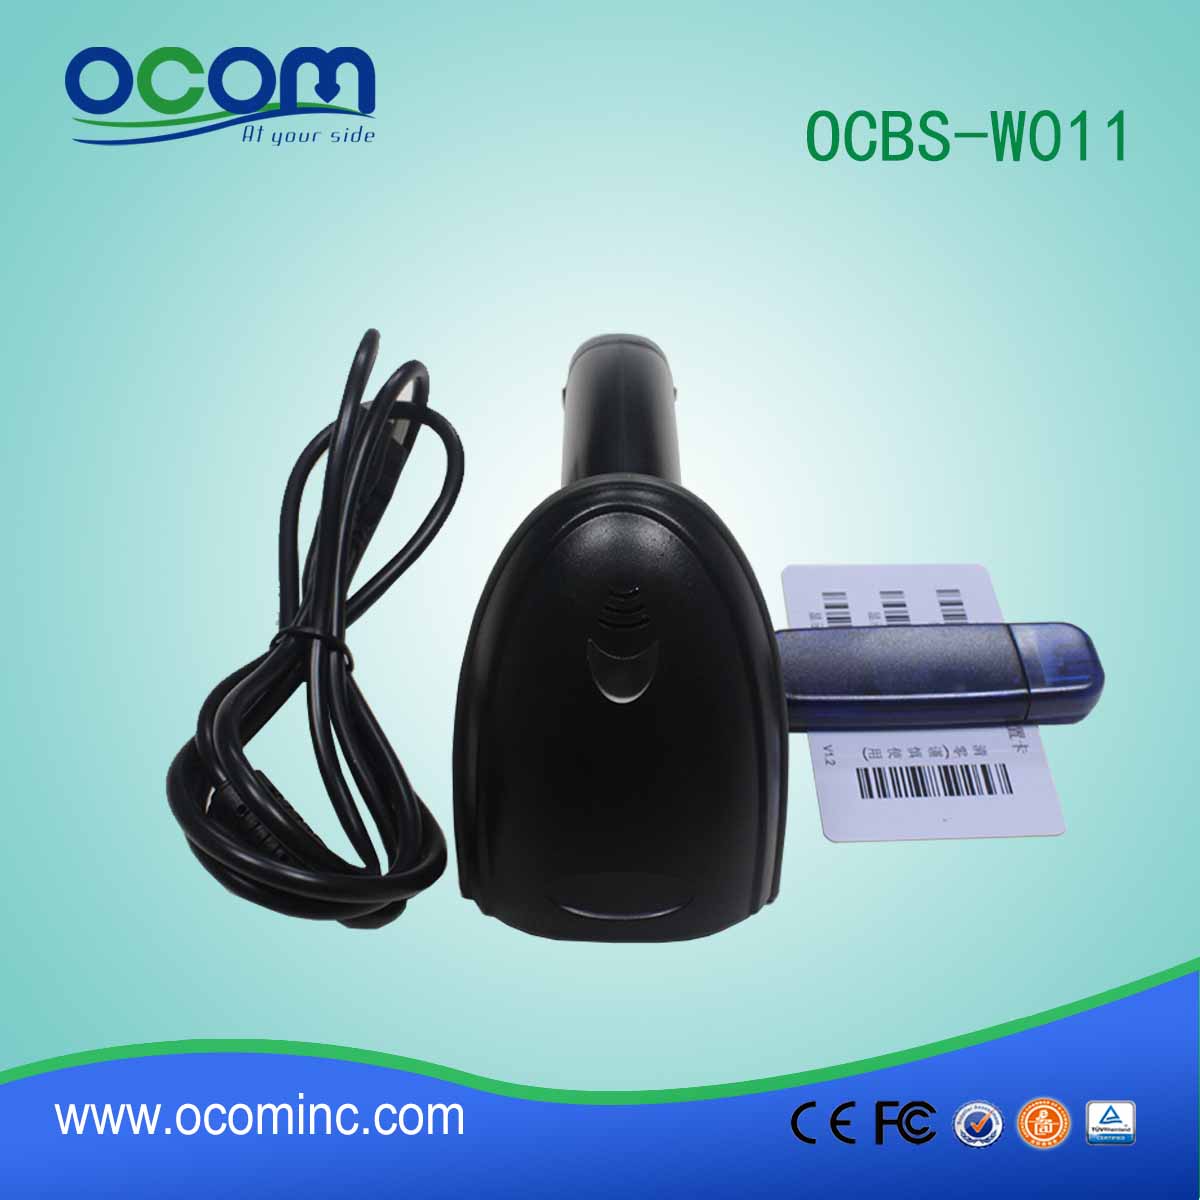 Wysoka szybkość skanowania USB RF433MHz Wireless Laser kodów kreskowych (OCBS-W011)